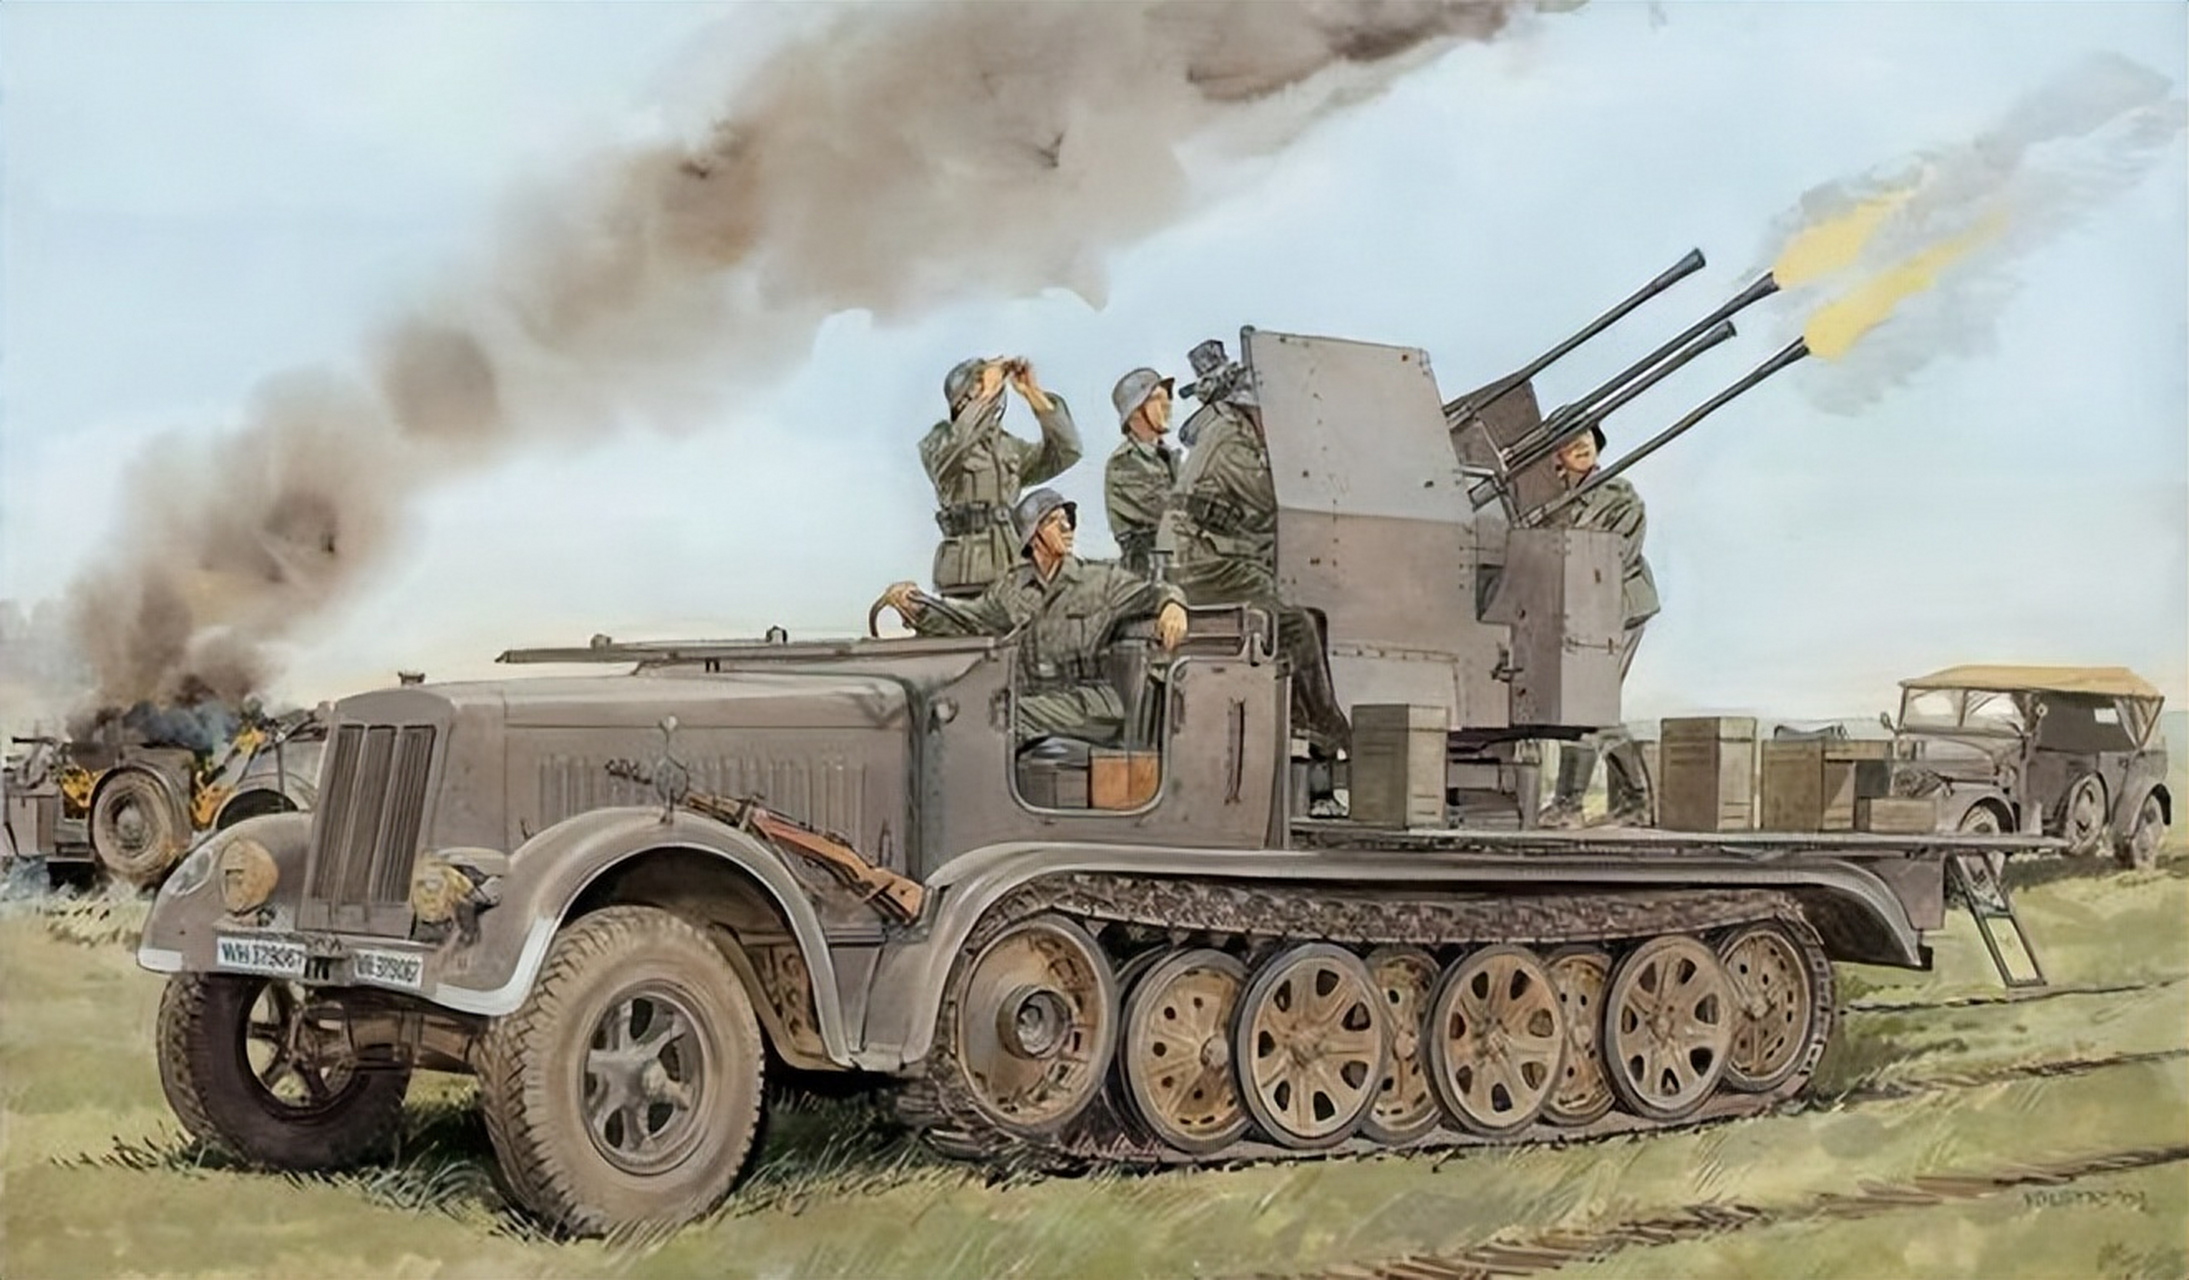 装备欣赏:一组二战德军防空炮题材插画,勿忘历史!